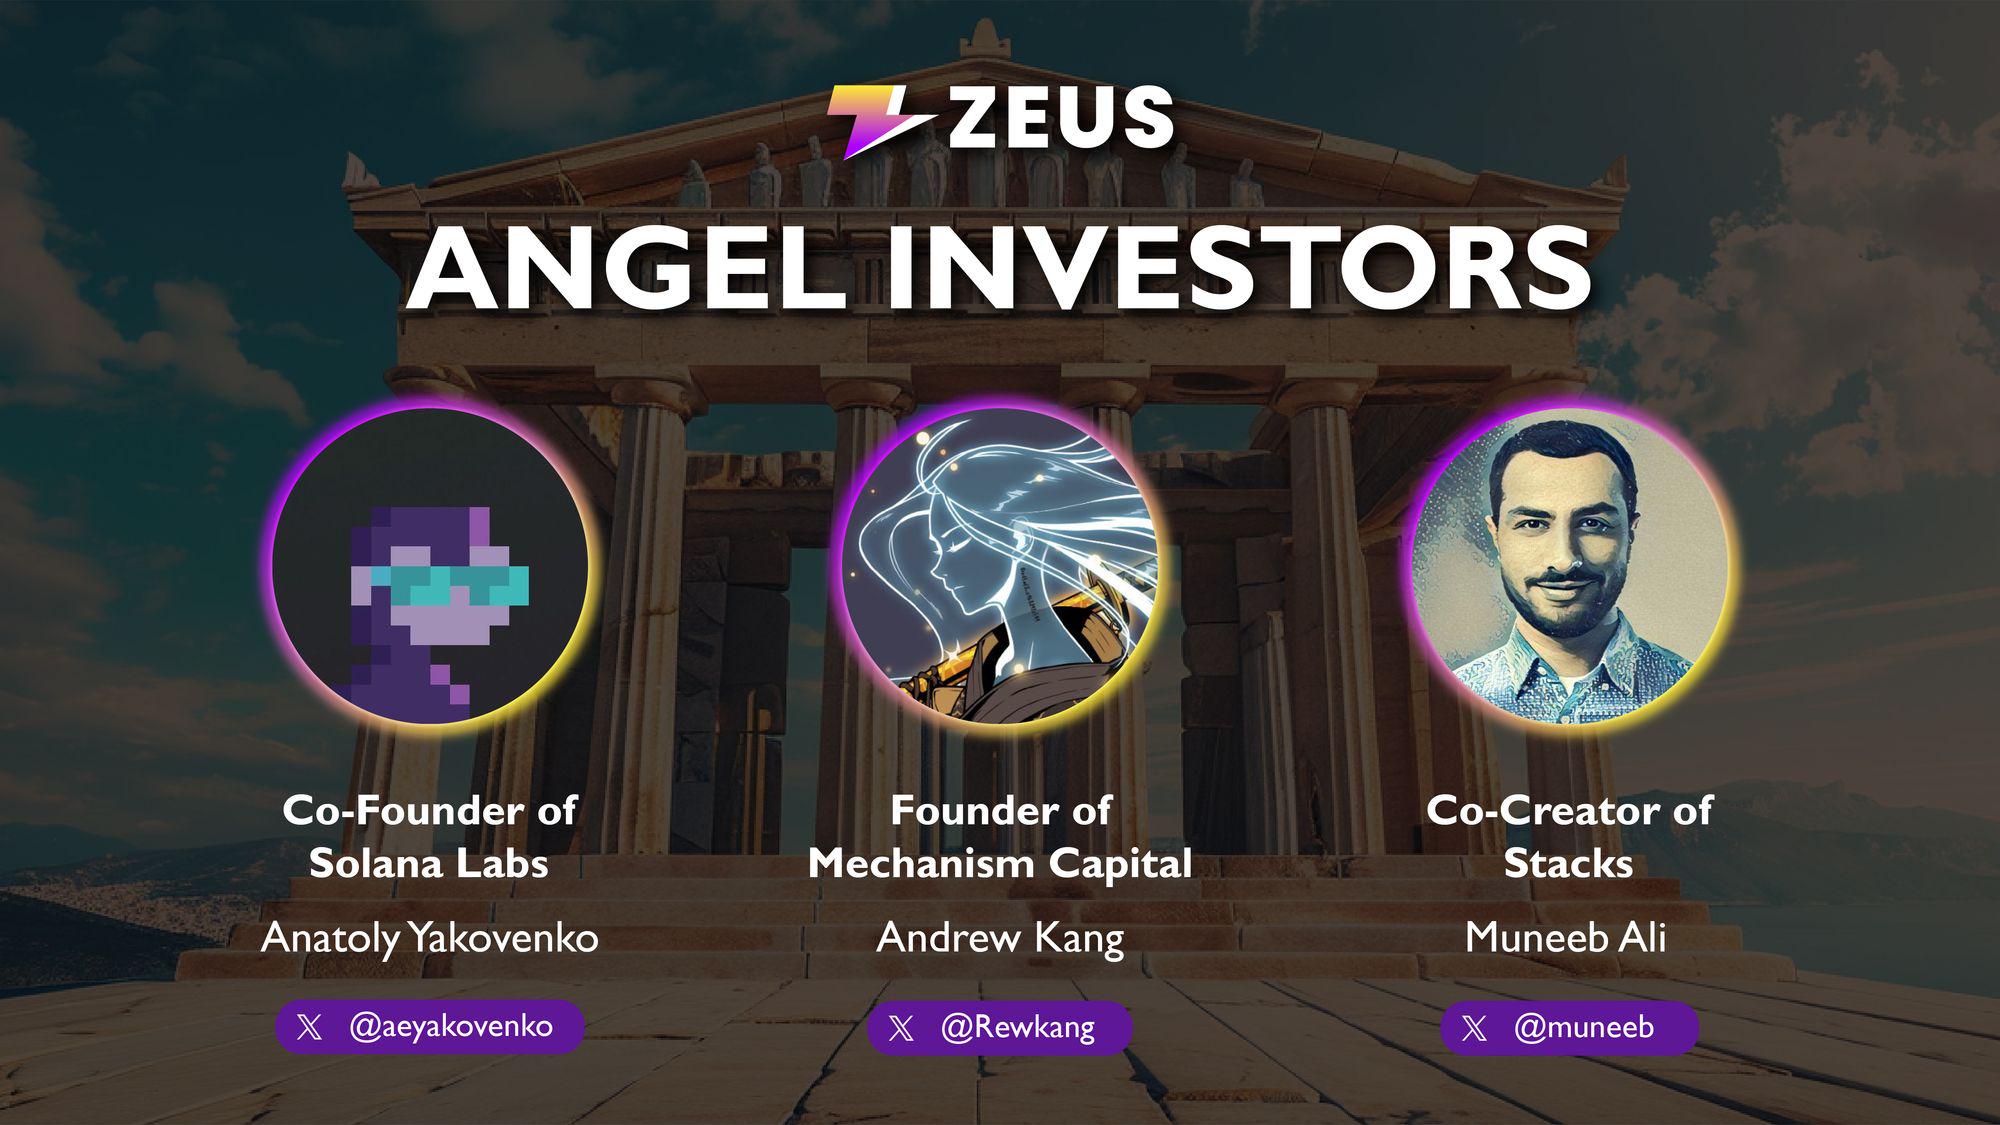 跨鏈通訊專案Zeus Network公佈天使投資人陣容，Solana及Stacks聯創等參投